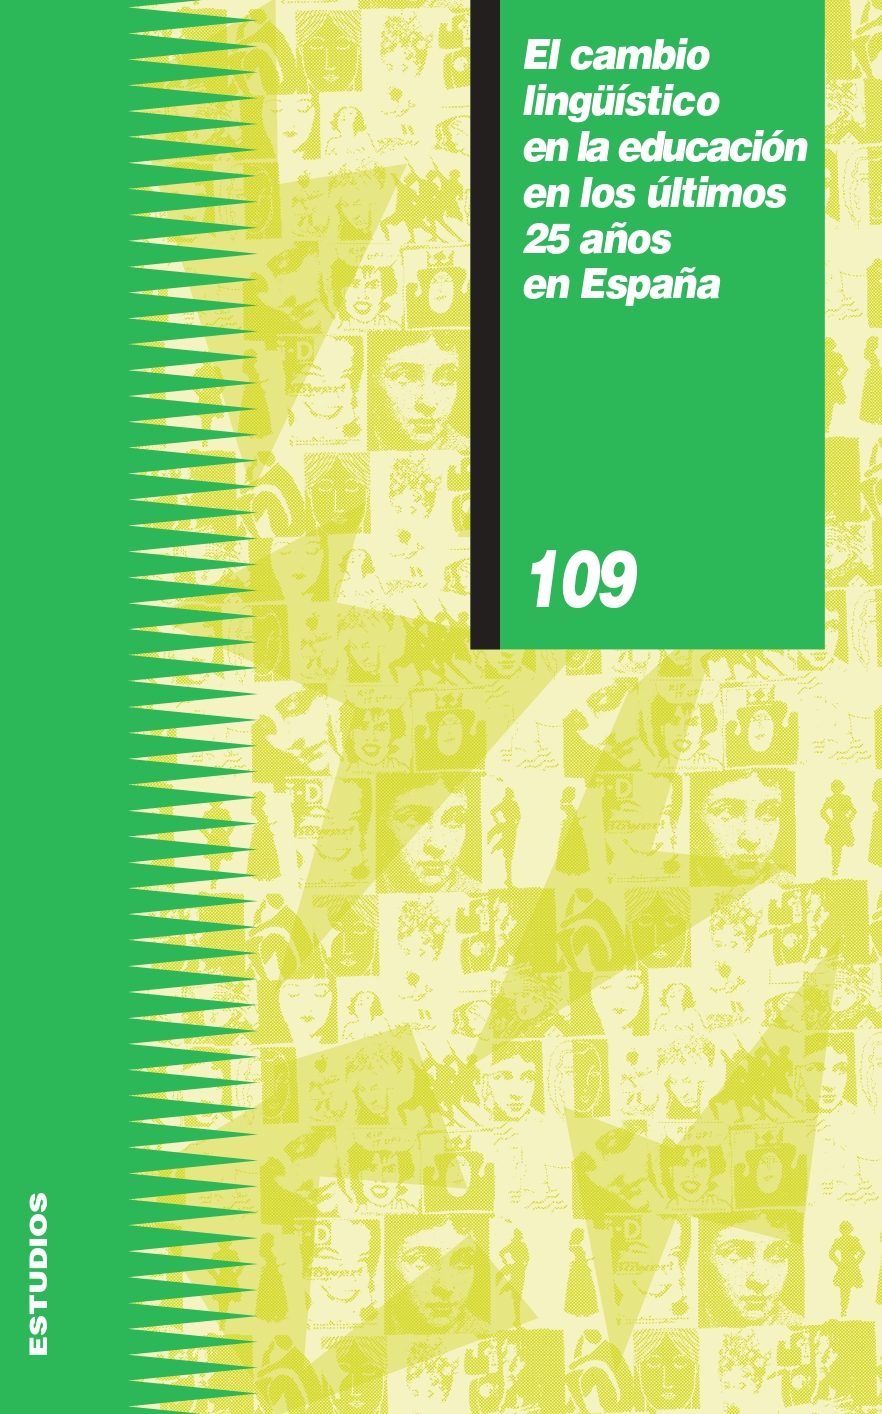 Imagen de portada del libro El cambio lingüístico en la educación en los últimos 25 años en España